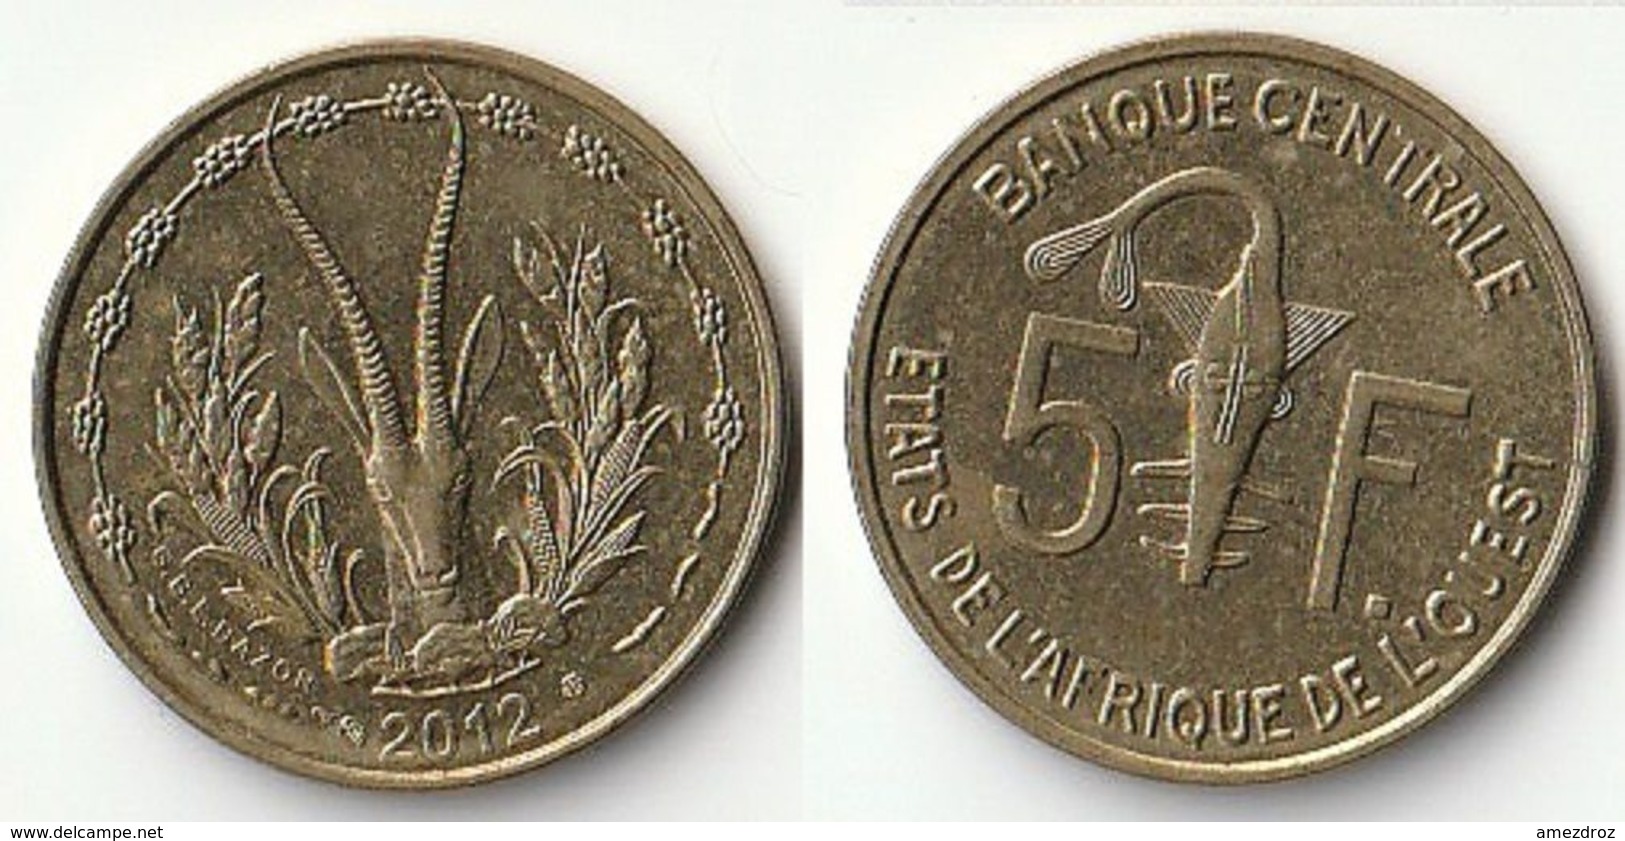 Pièce De 5 Francs CFA XOF 2012 Origine Côte D'Ivoire Afrique De L'Ouest (v) - Costa D'Avorio